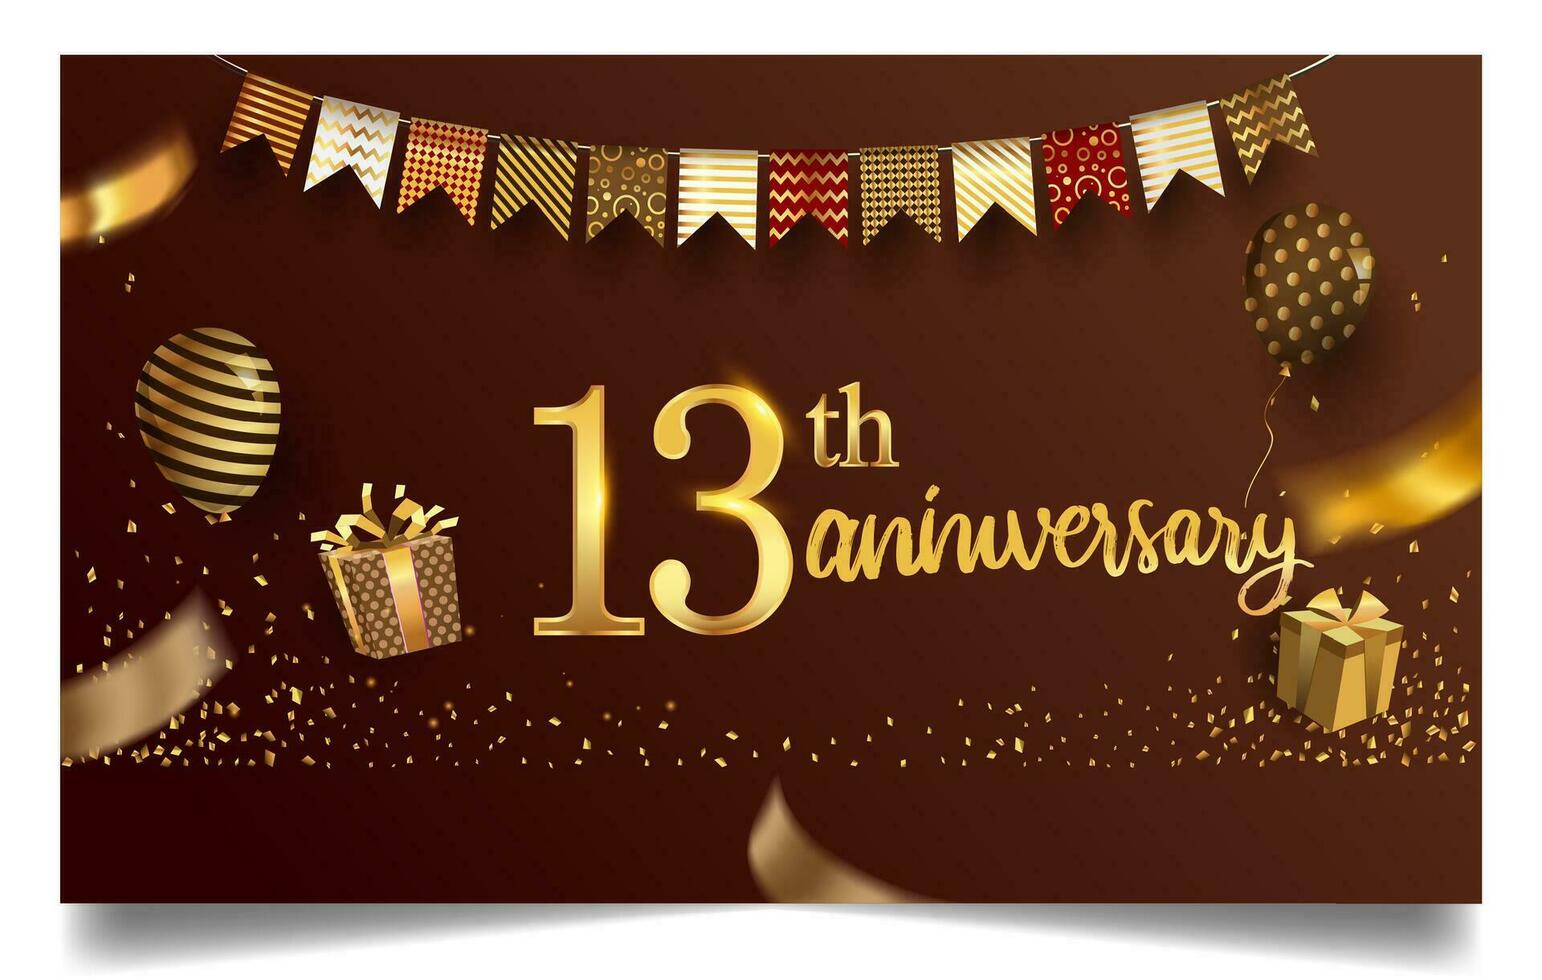 50 años aniversario diseño para saludo tarjetas y invitación, con globo, papel picado y regalo caja, elegante diseño con oro y oscuro color, diseño modelo para cumpleaños celebracion. vector